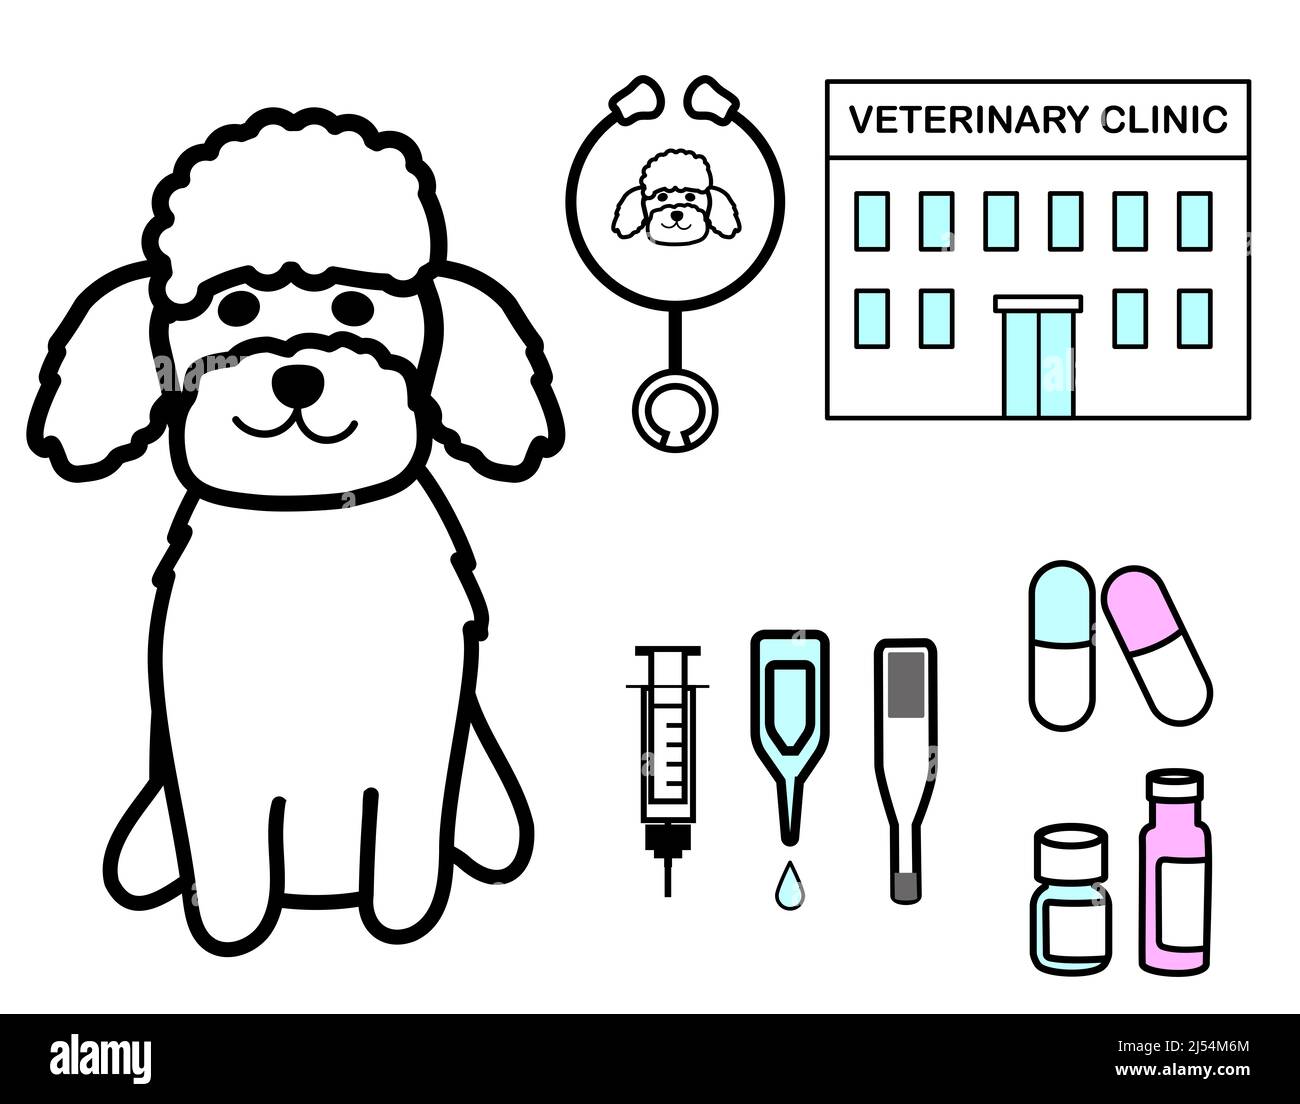 Una barbetta giocattolo con set di icone: Siringa, gocce, termometro, medicinali, stetoscopio, e clinica veterinaria Foto Stock